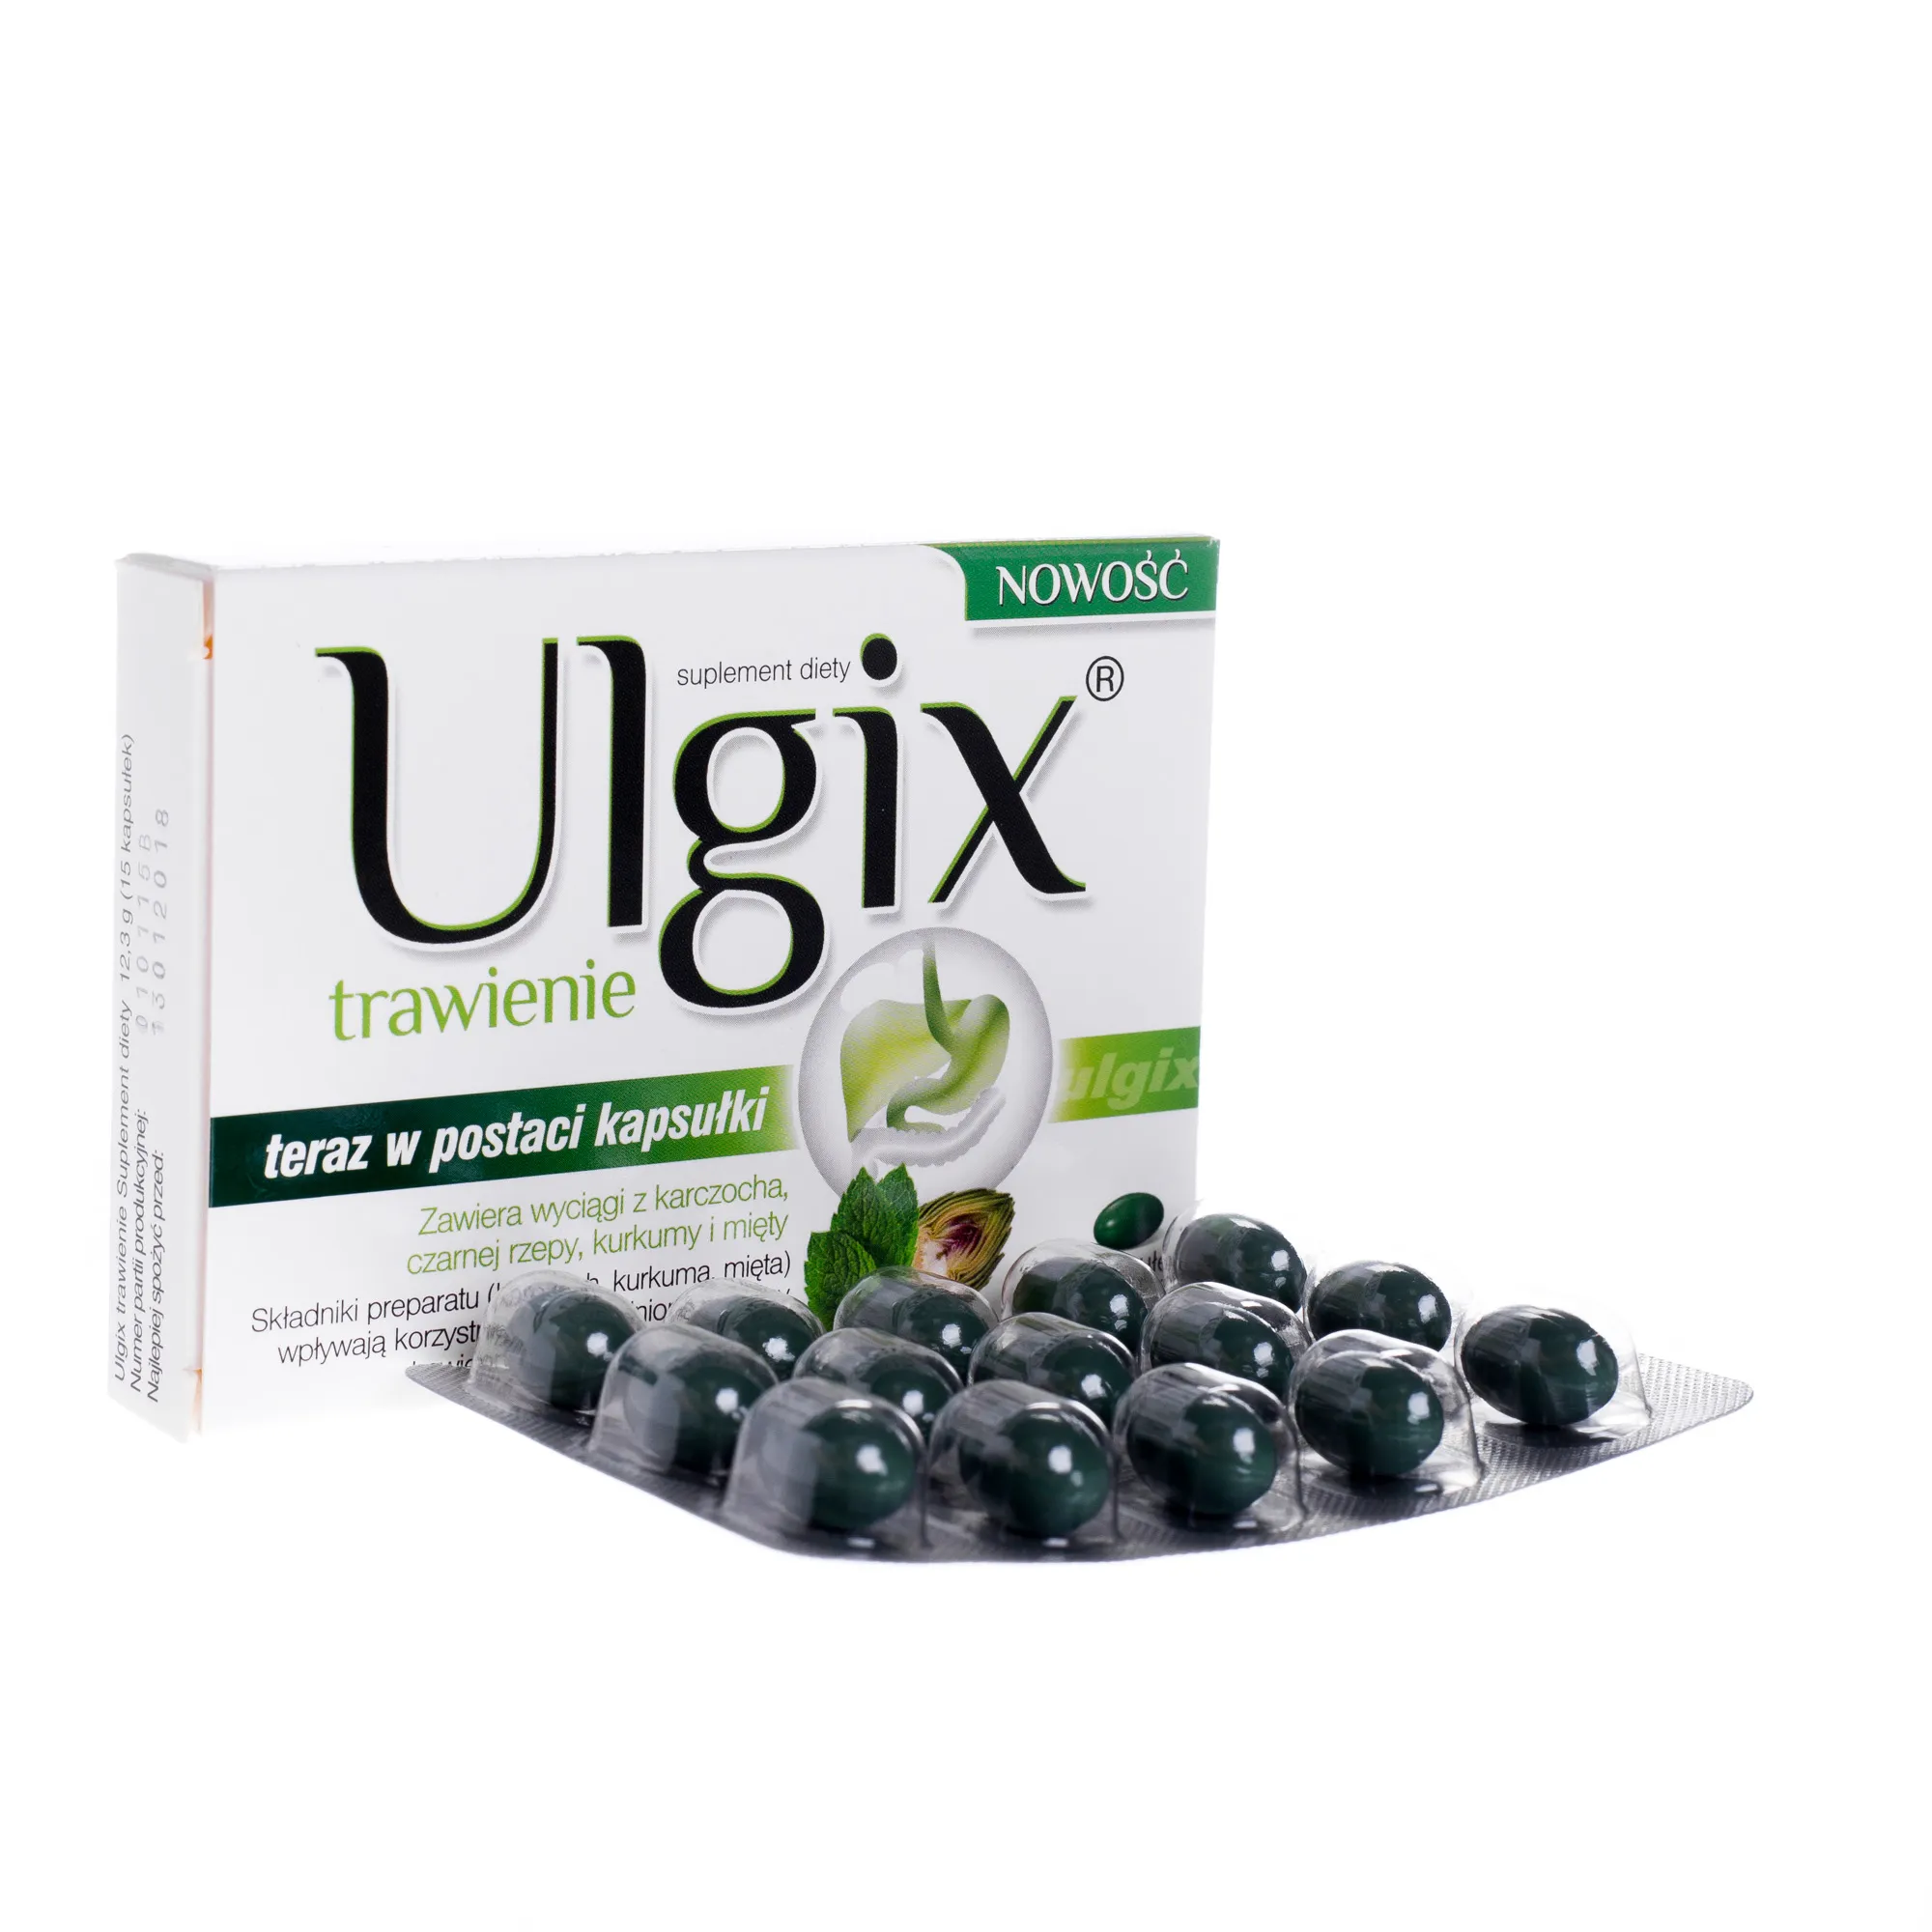 Ulgix trawienie, suplement diety, 15 kapsułek miękkich